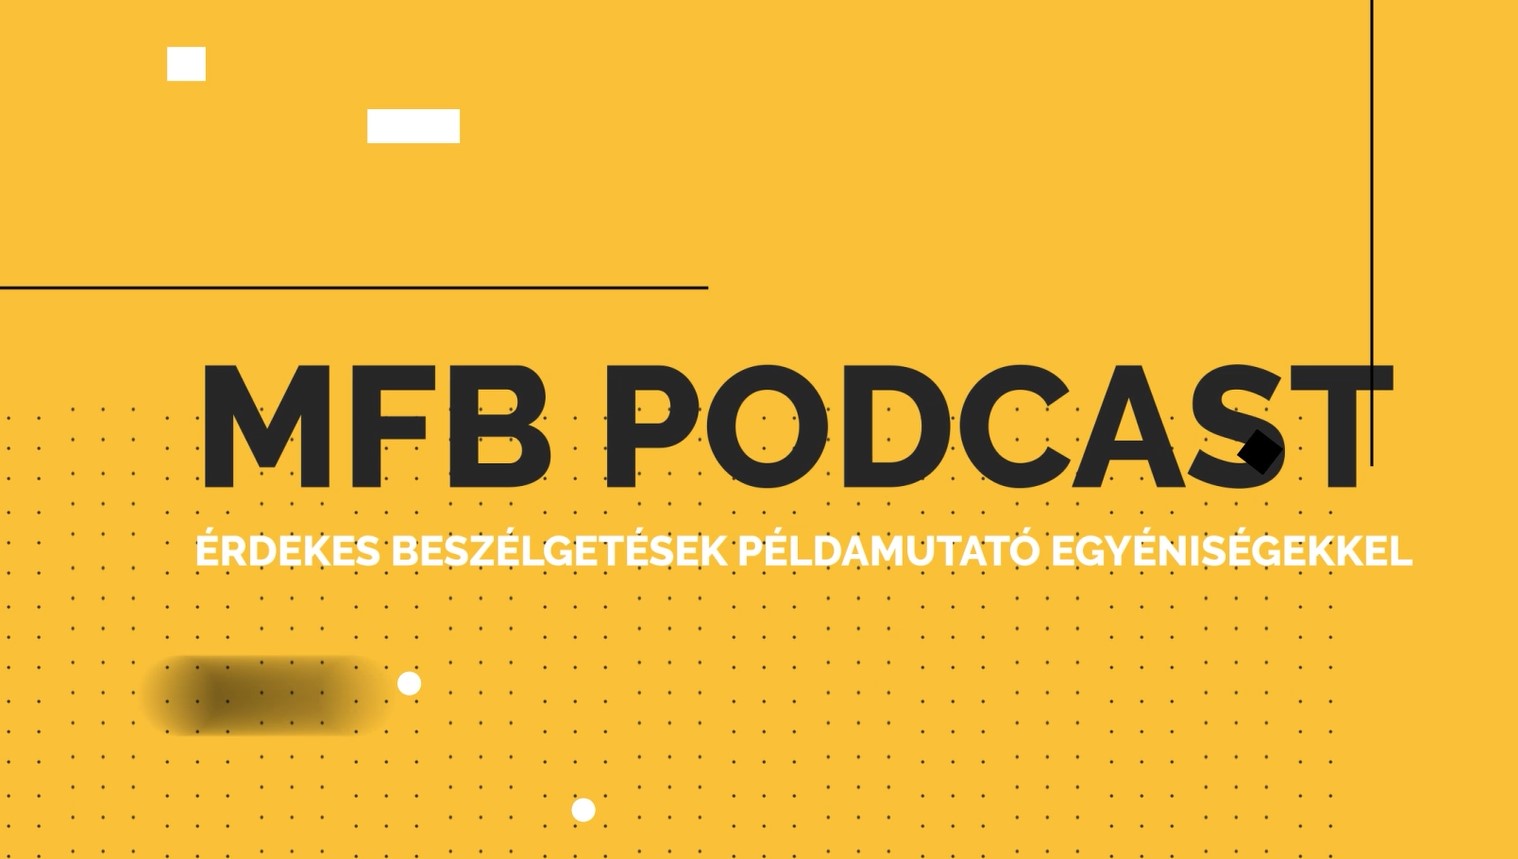 MFB Podcast – Beszélgetés Dr. Szalai Tamás csillagásszal a föld kialakulásáról